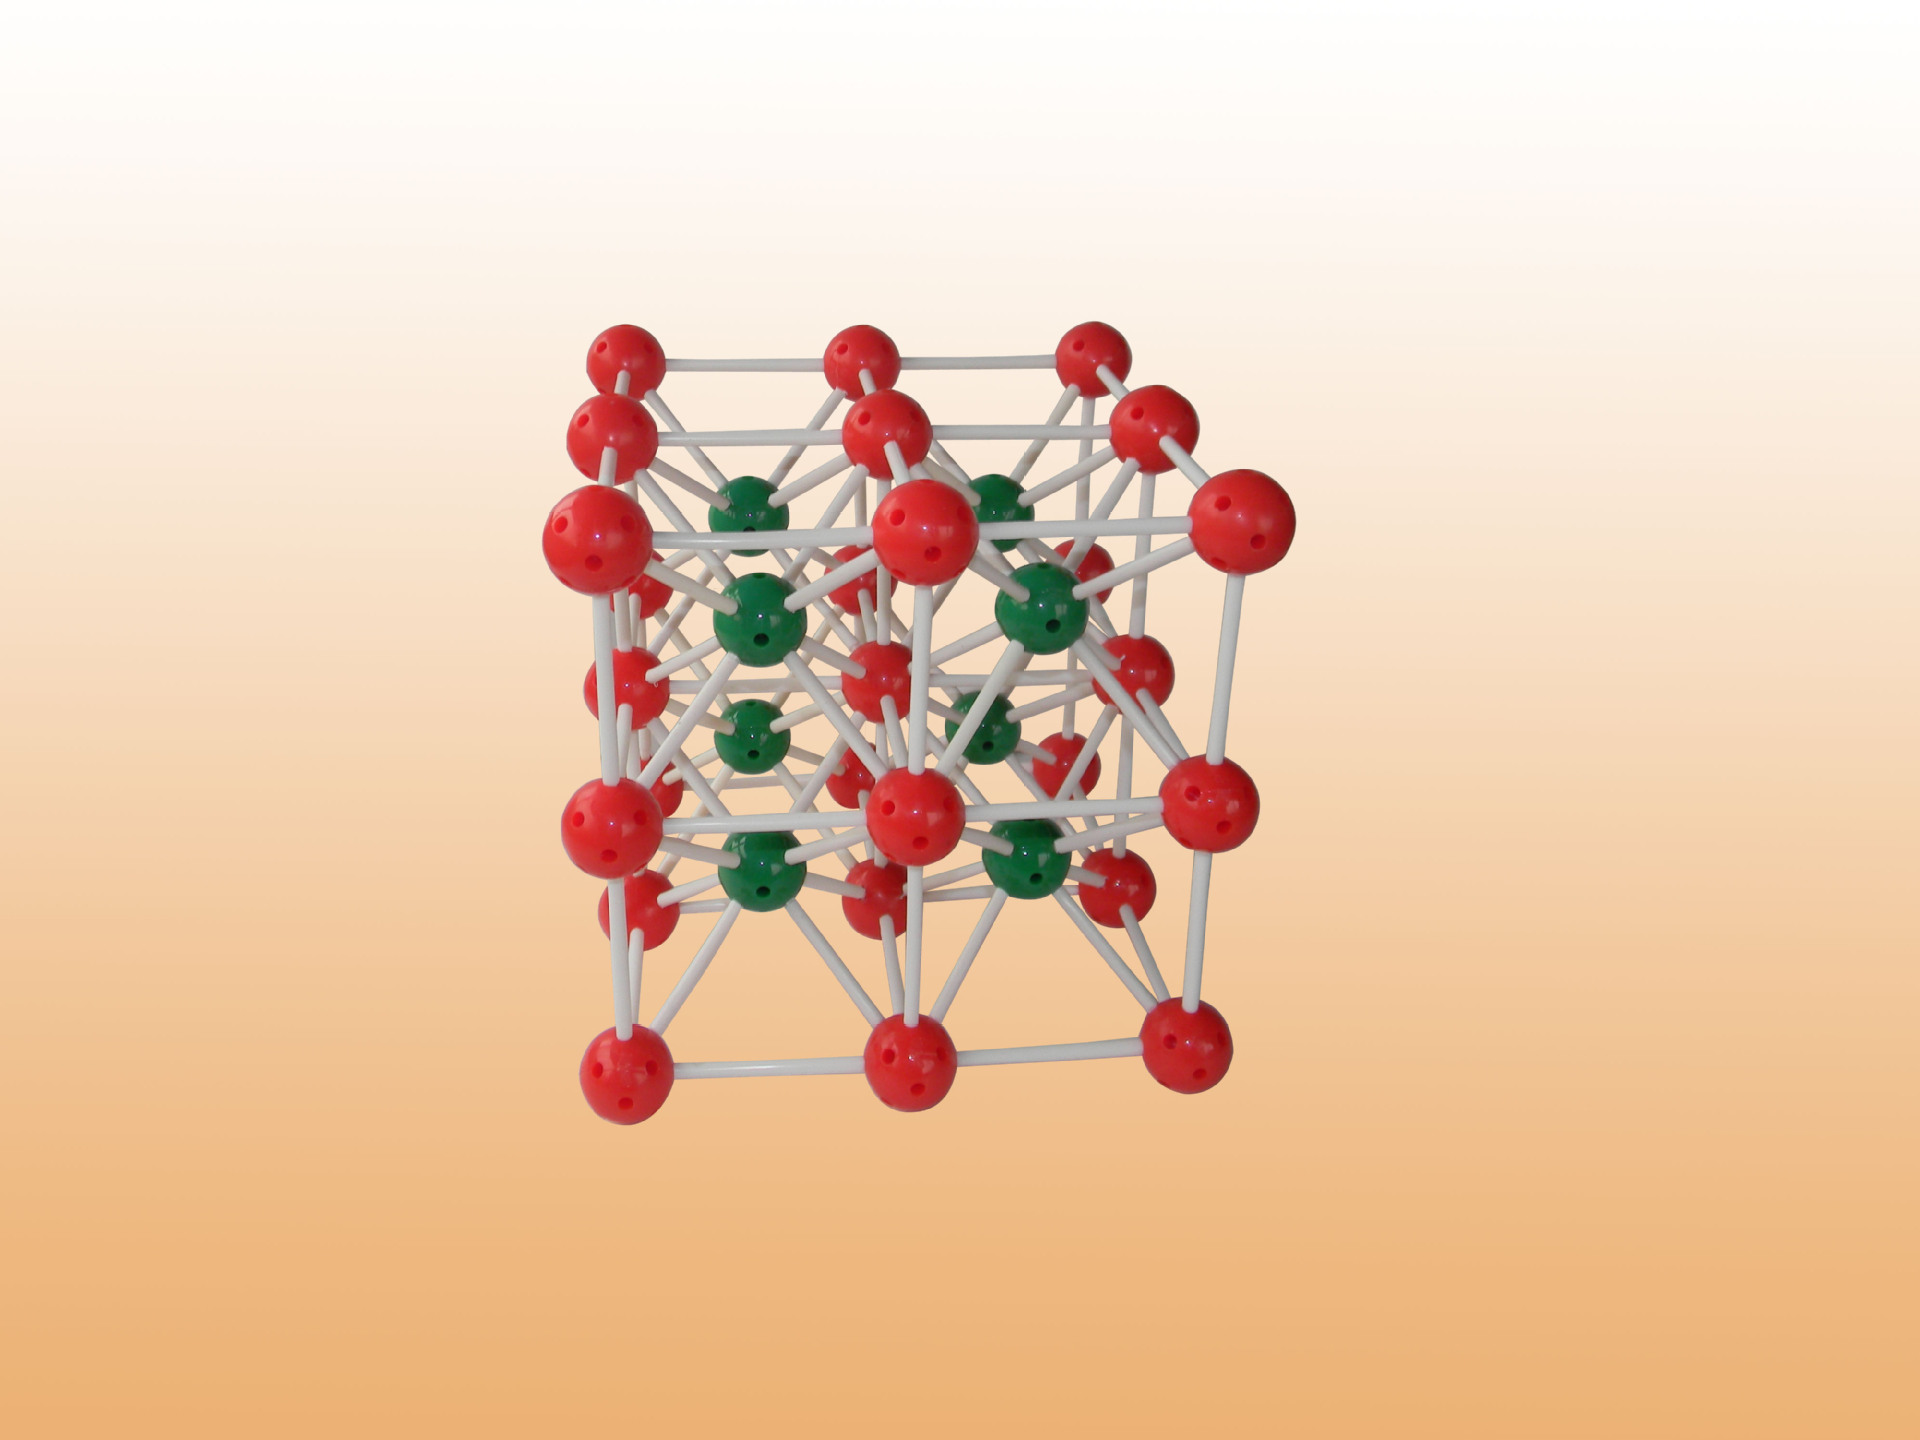 供应3123氯化铯晶体结构模型教学仪器化学实验仪器